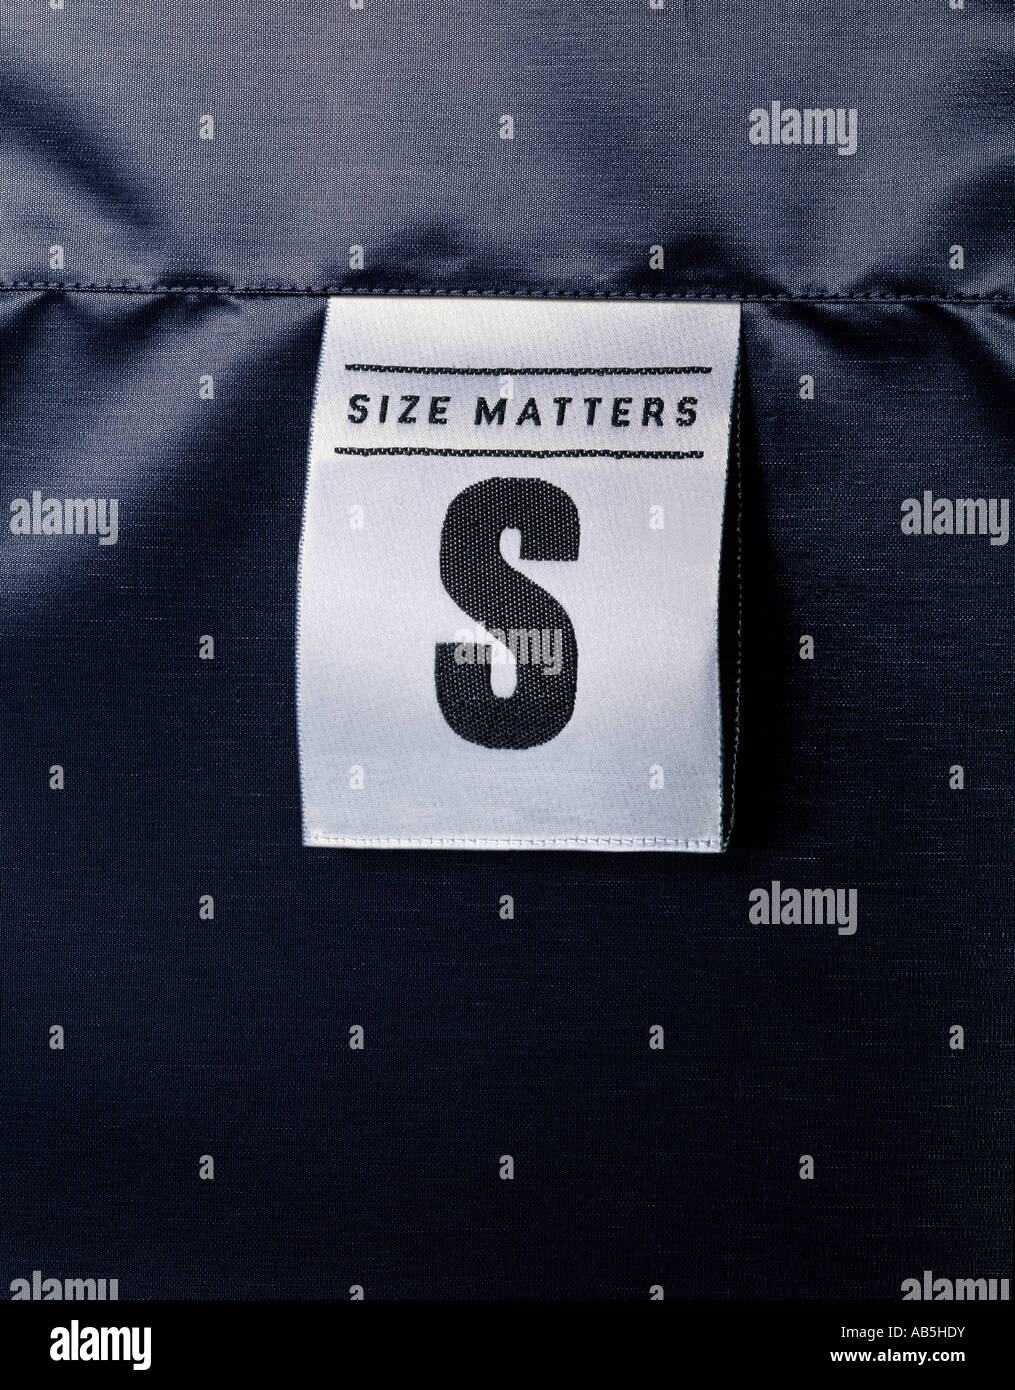 Size matters Stock Photo